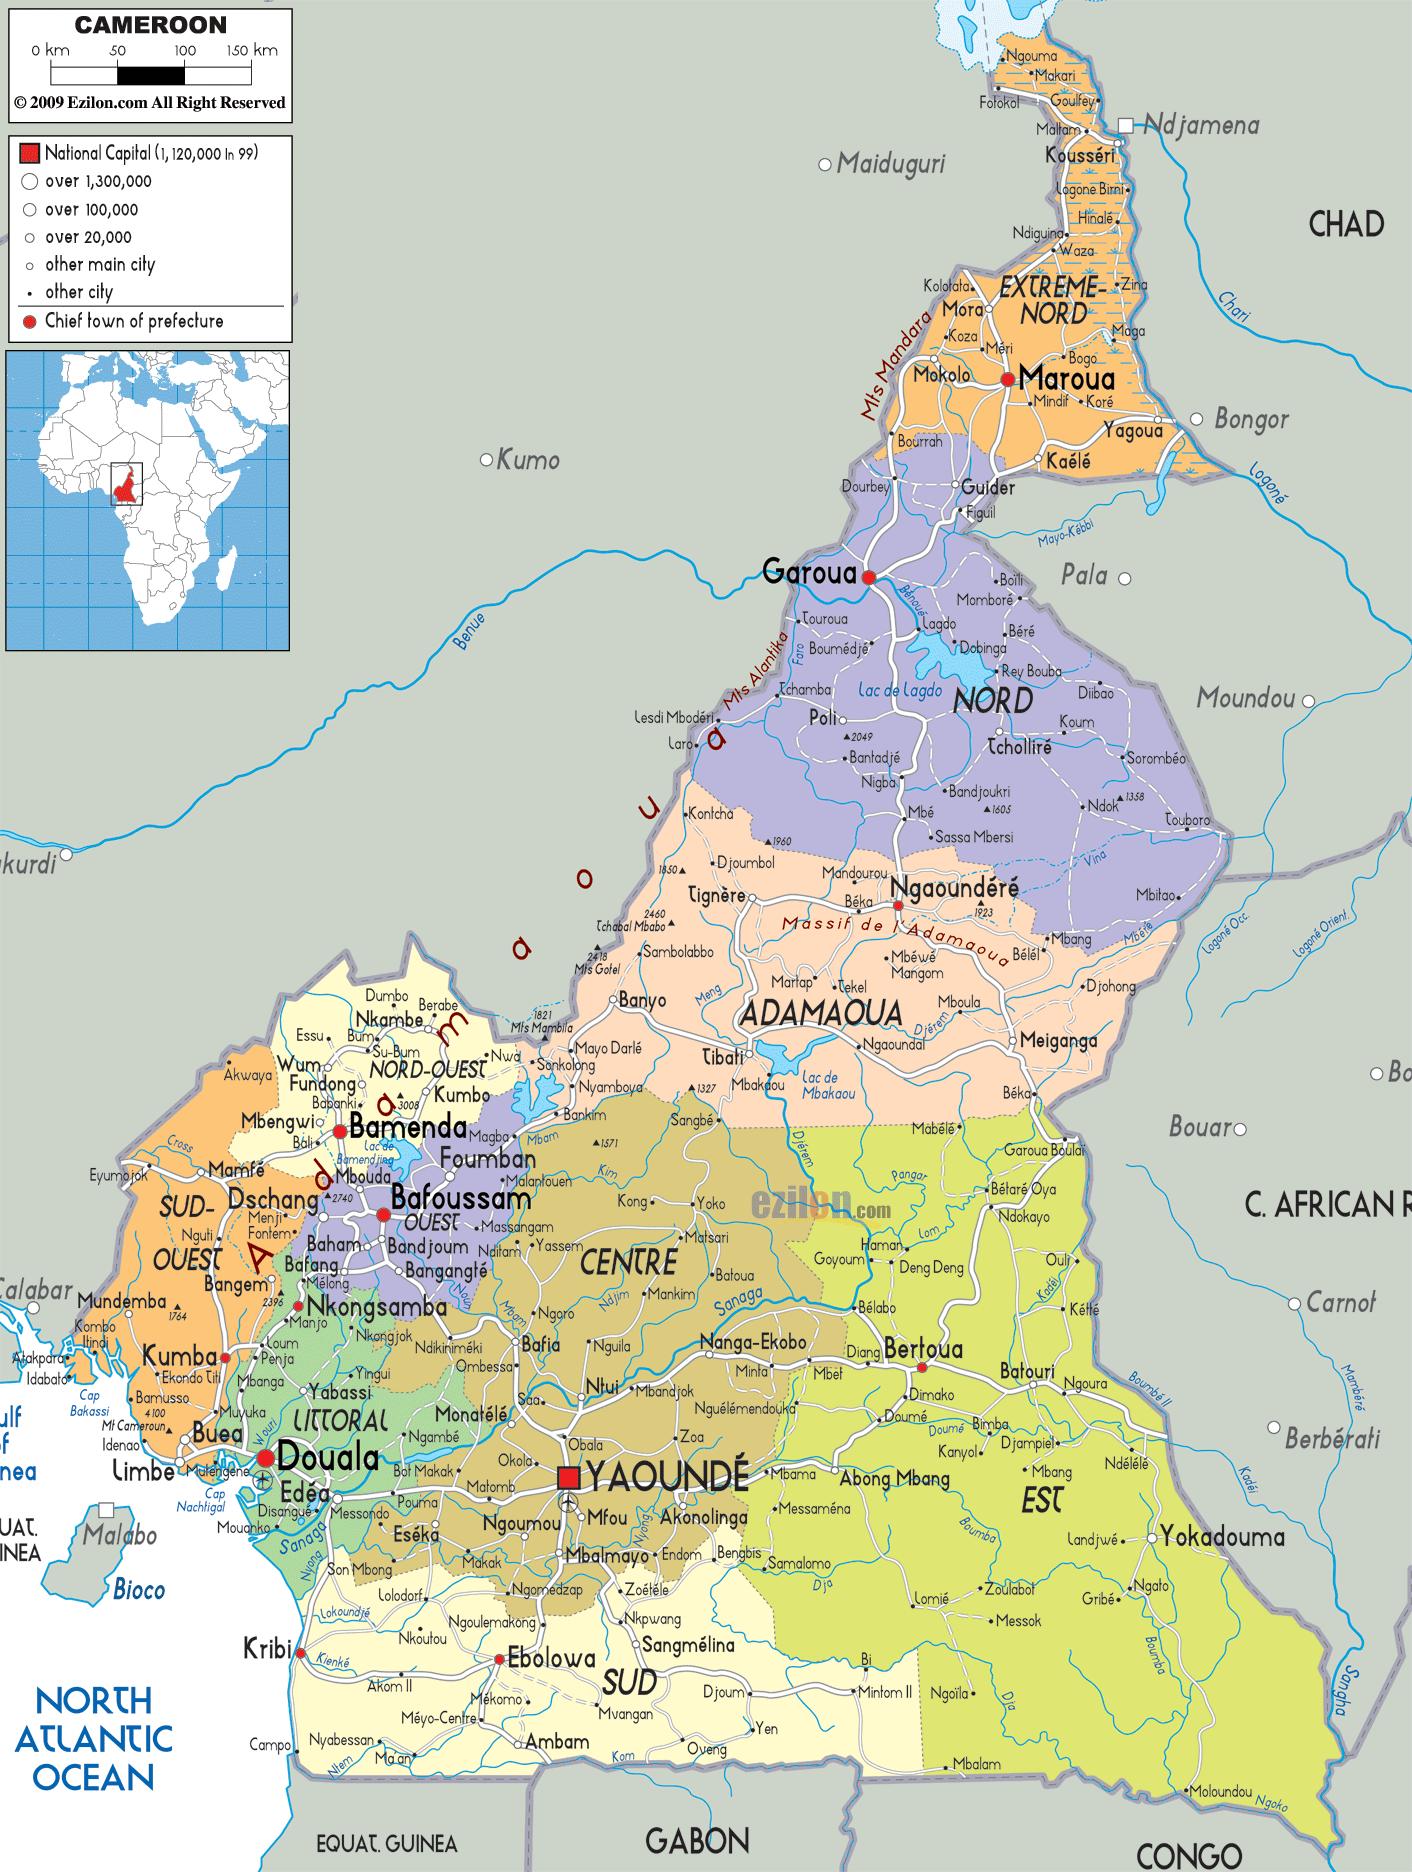 カメルーンの地域地図 カメルーン 地図 地域 中央アフリカ アフリカ